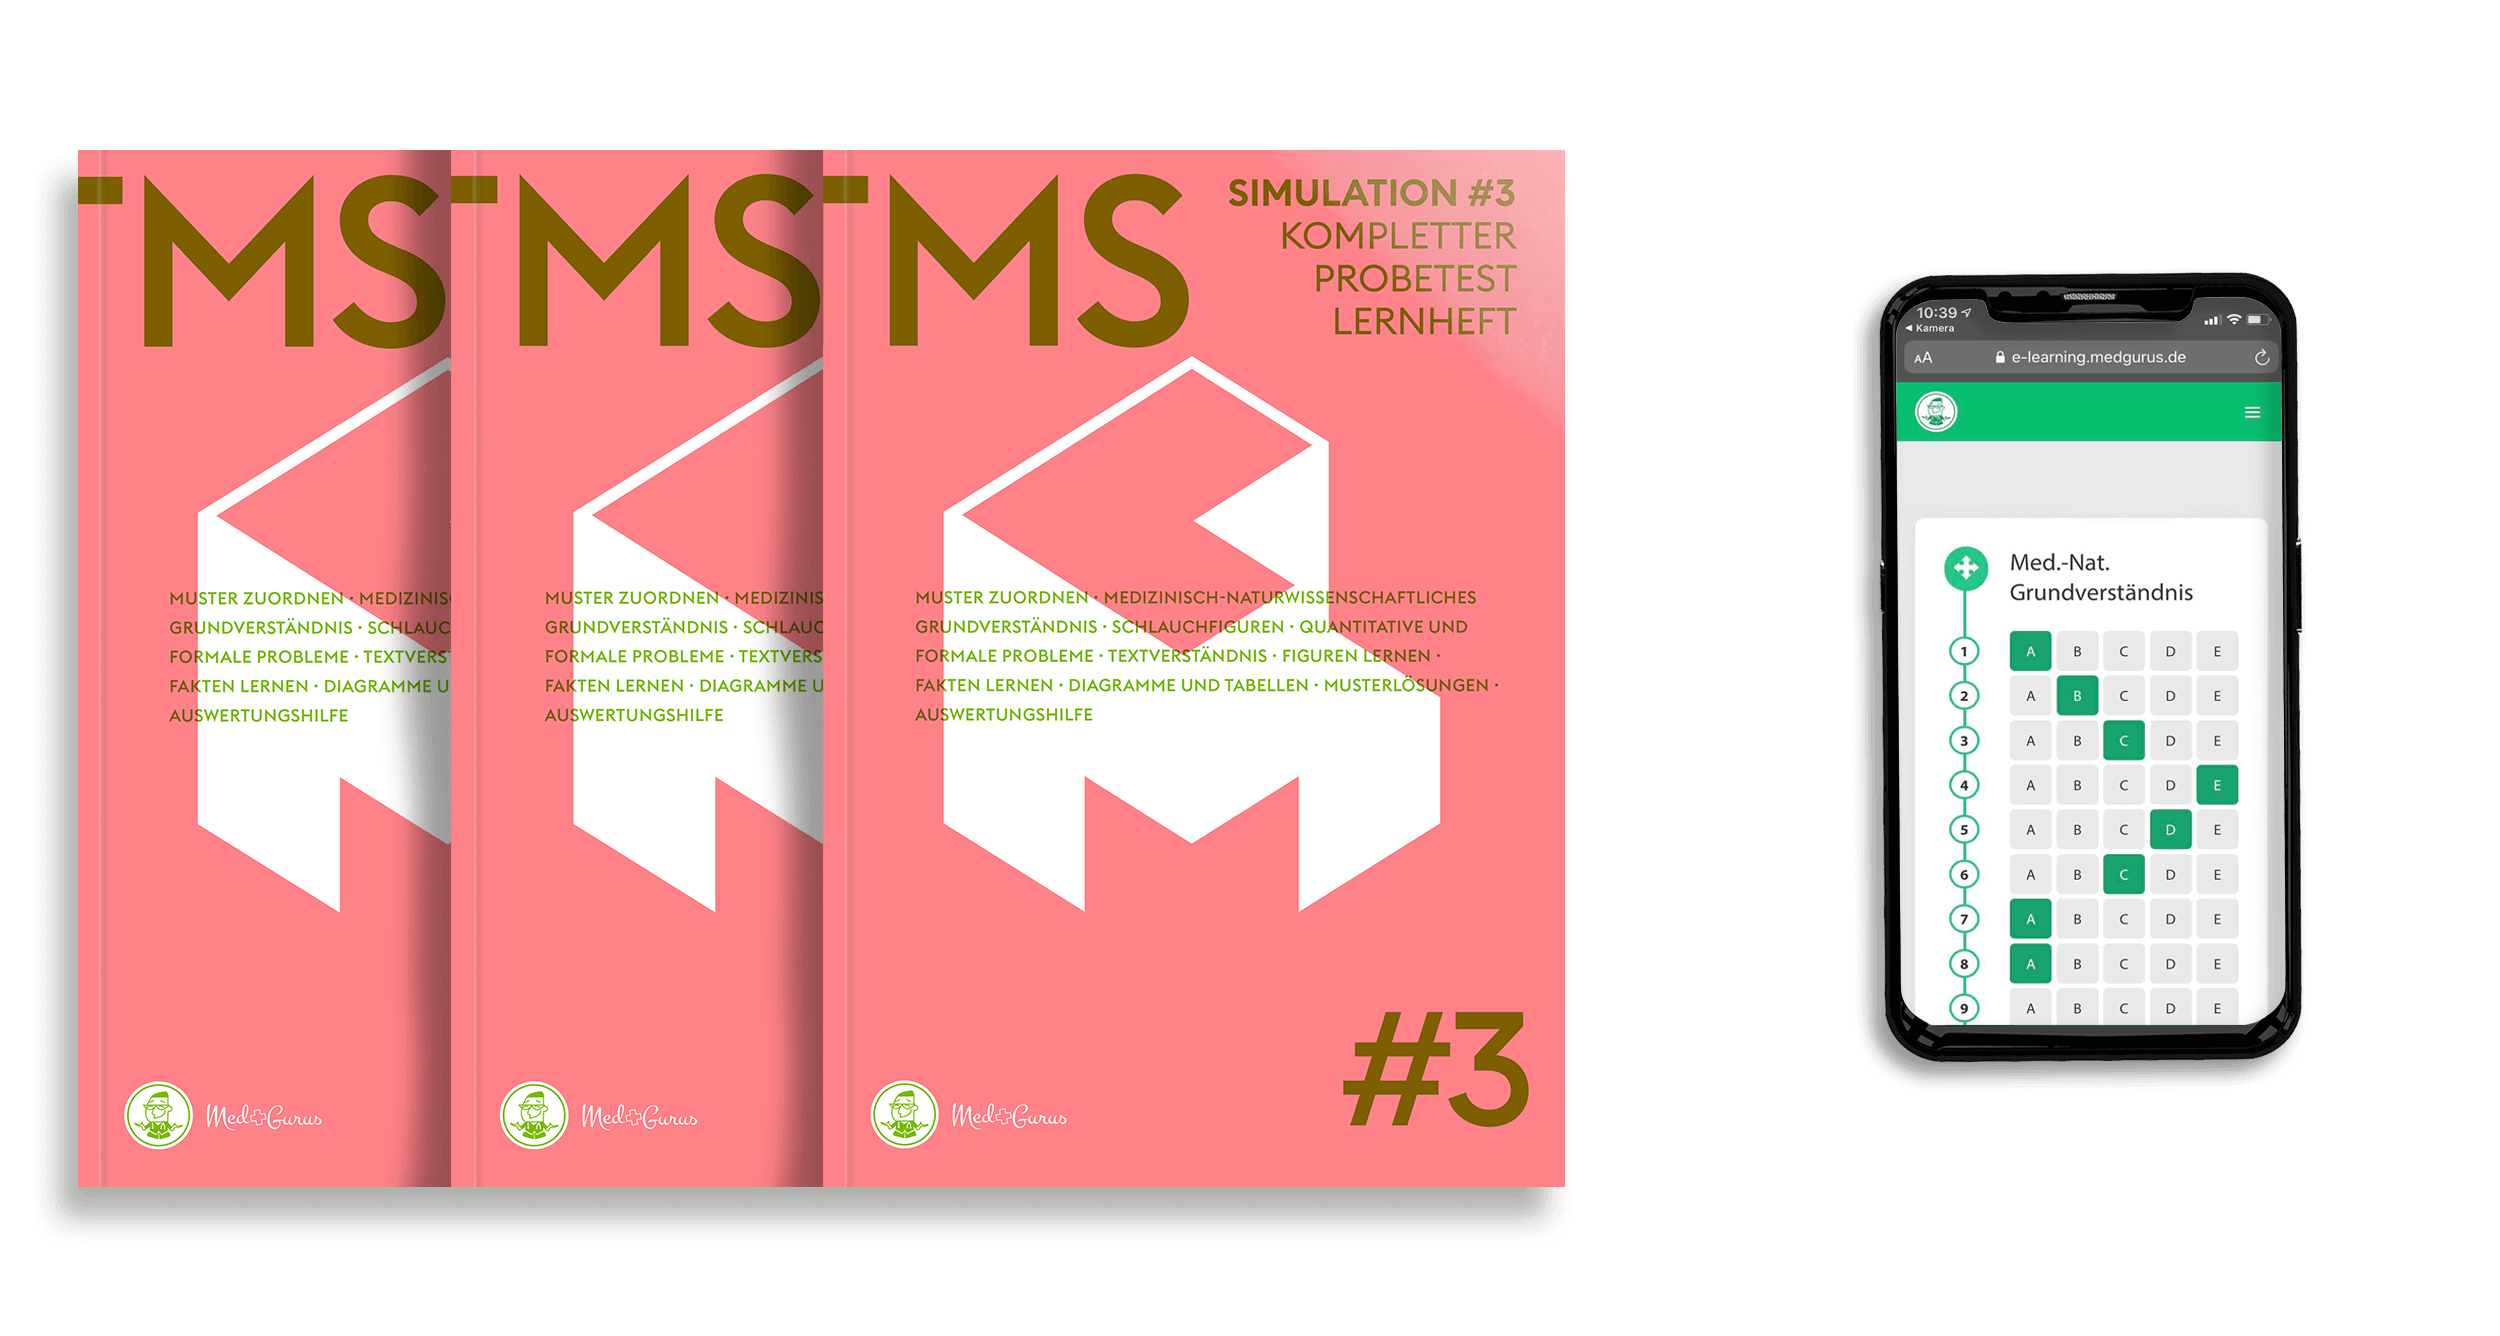 TMS_Simulation#3 MedGurus